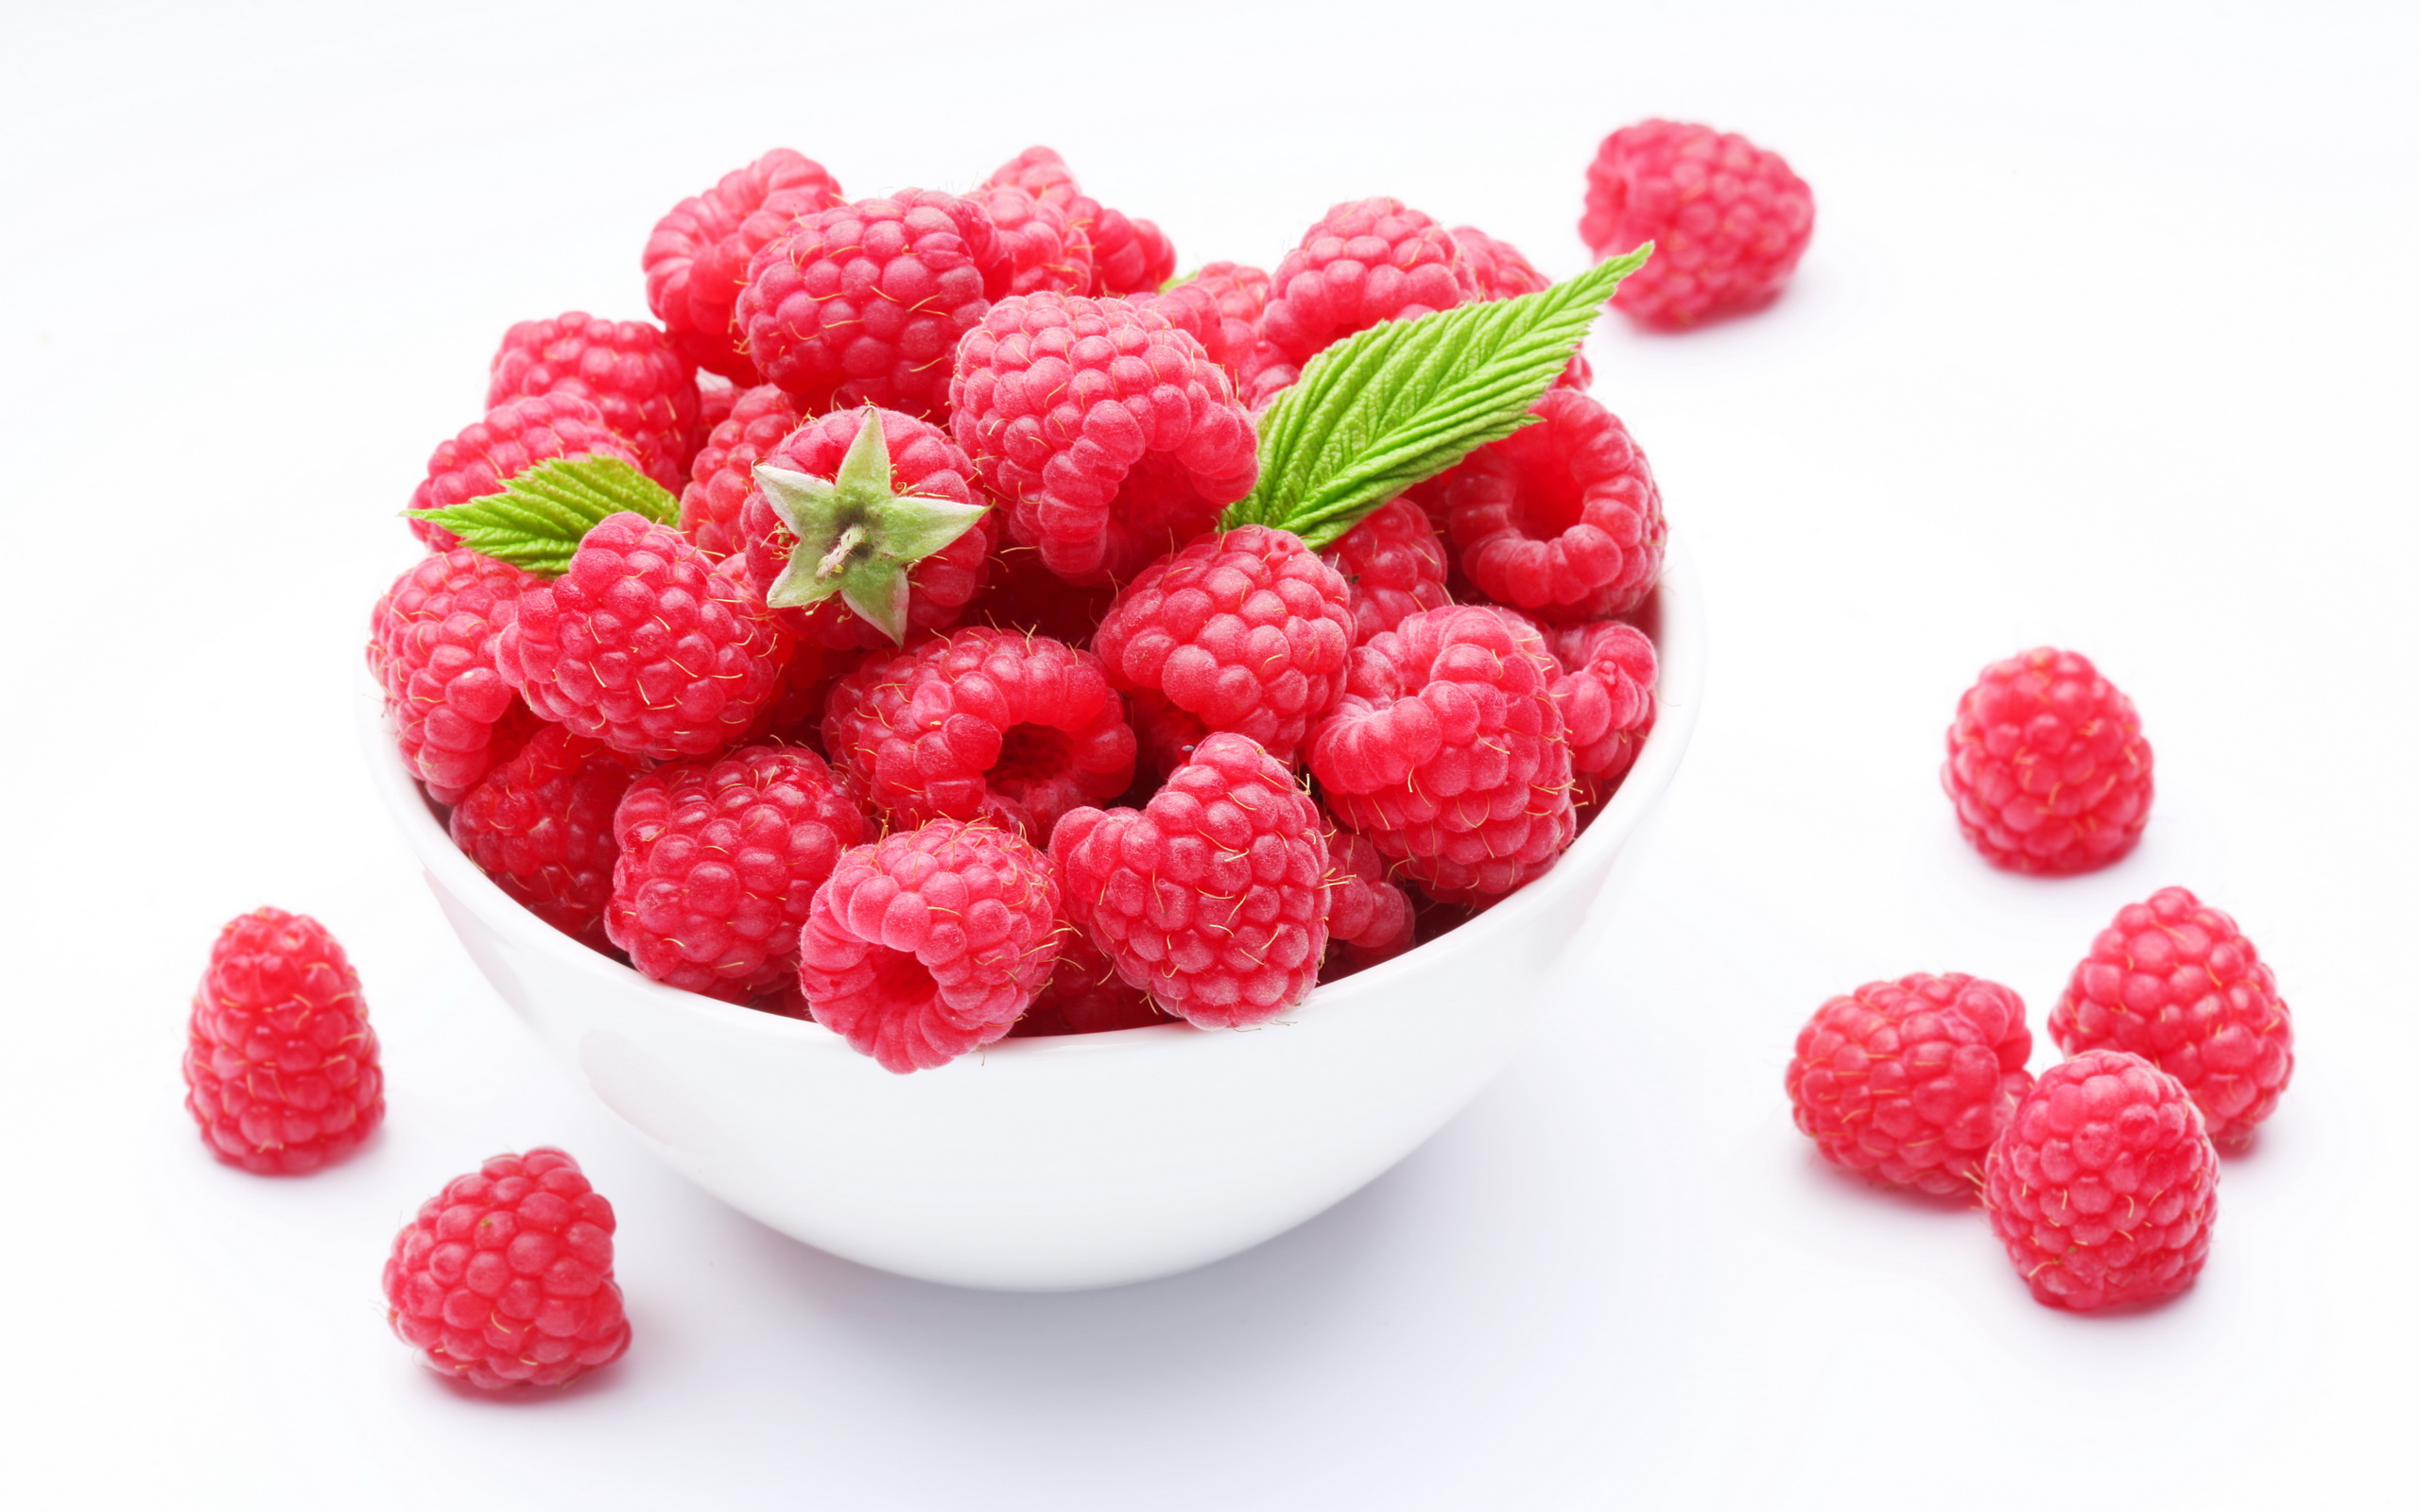 Raspberries Picture